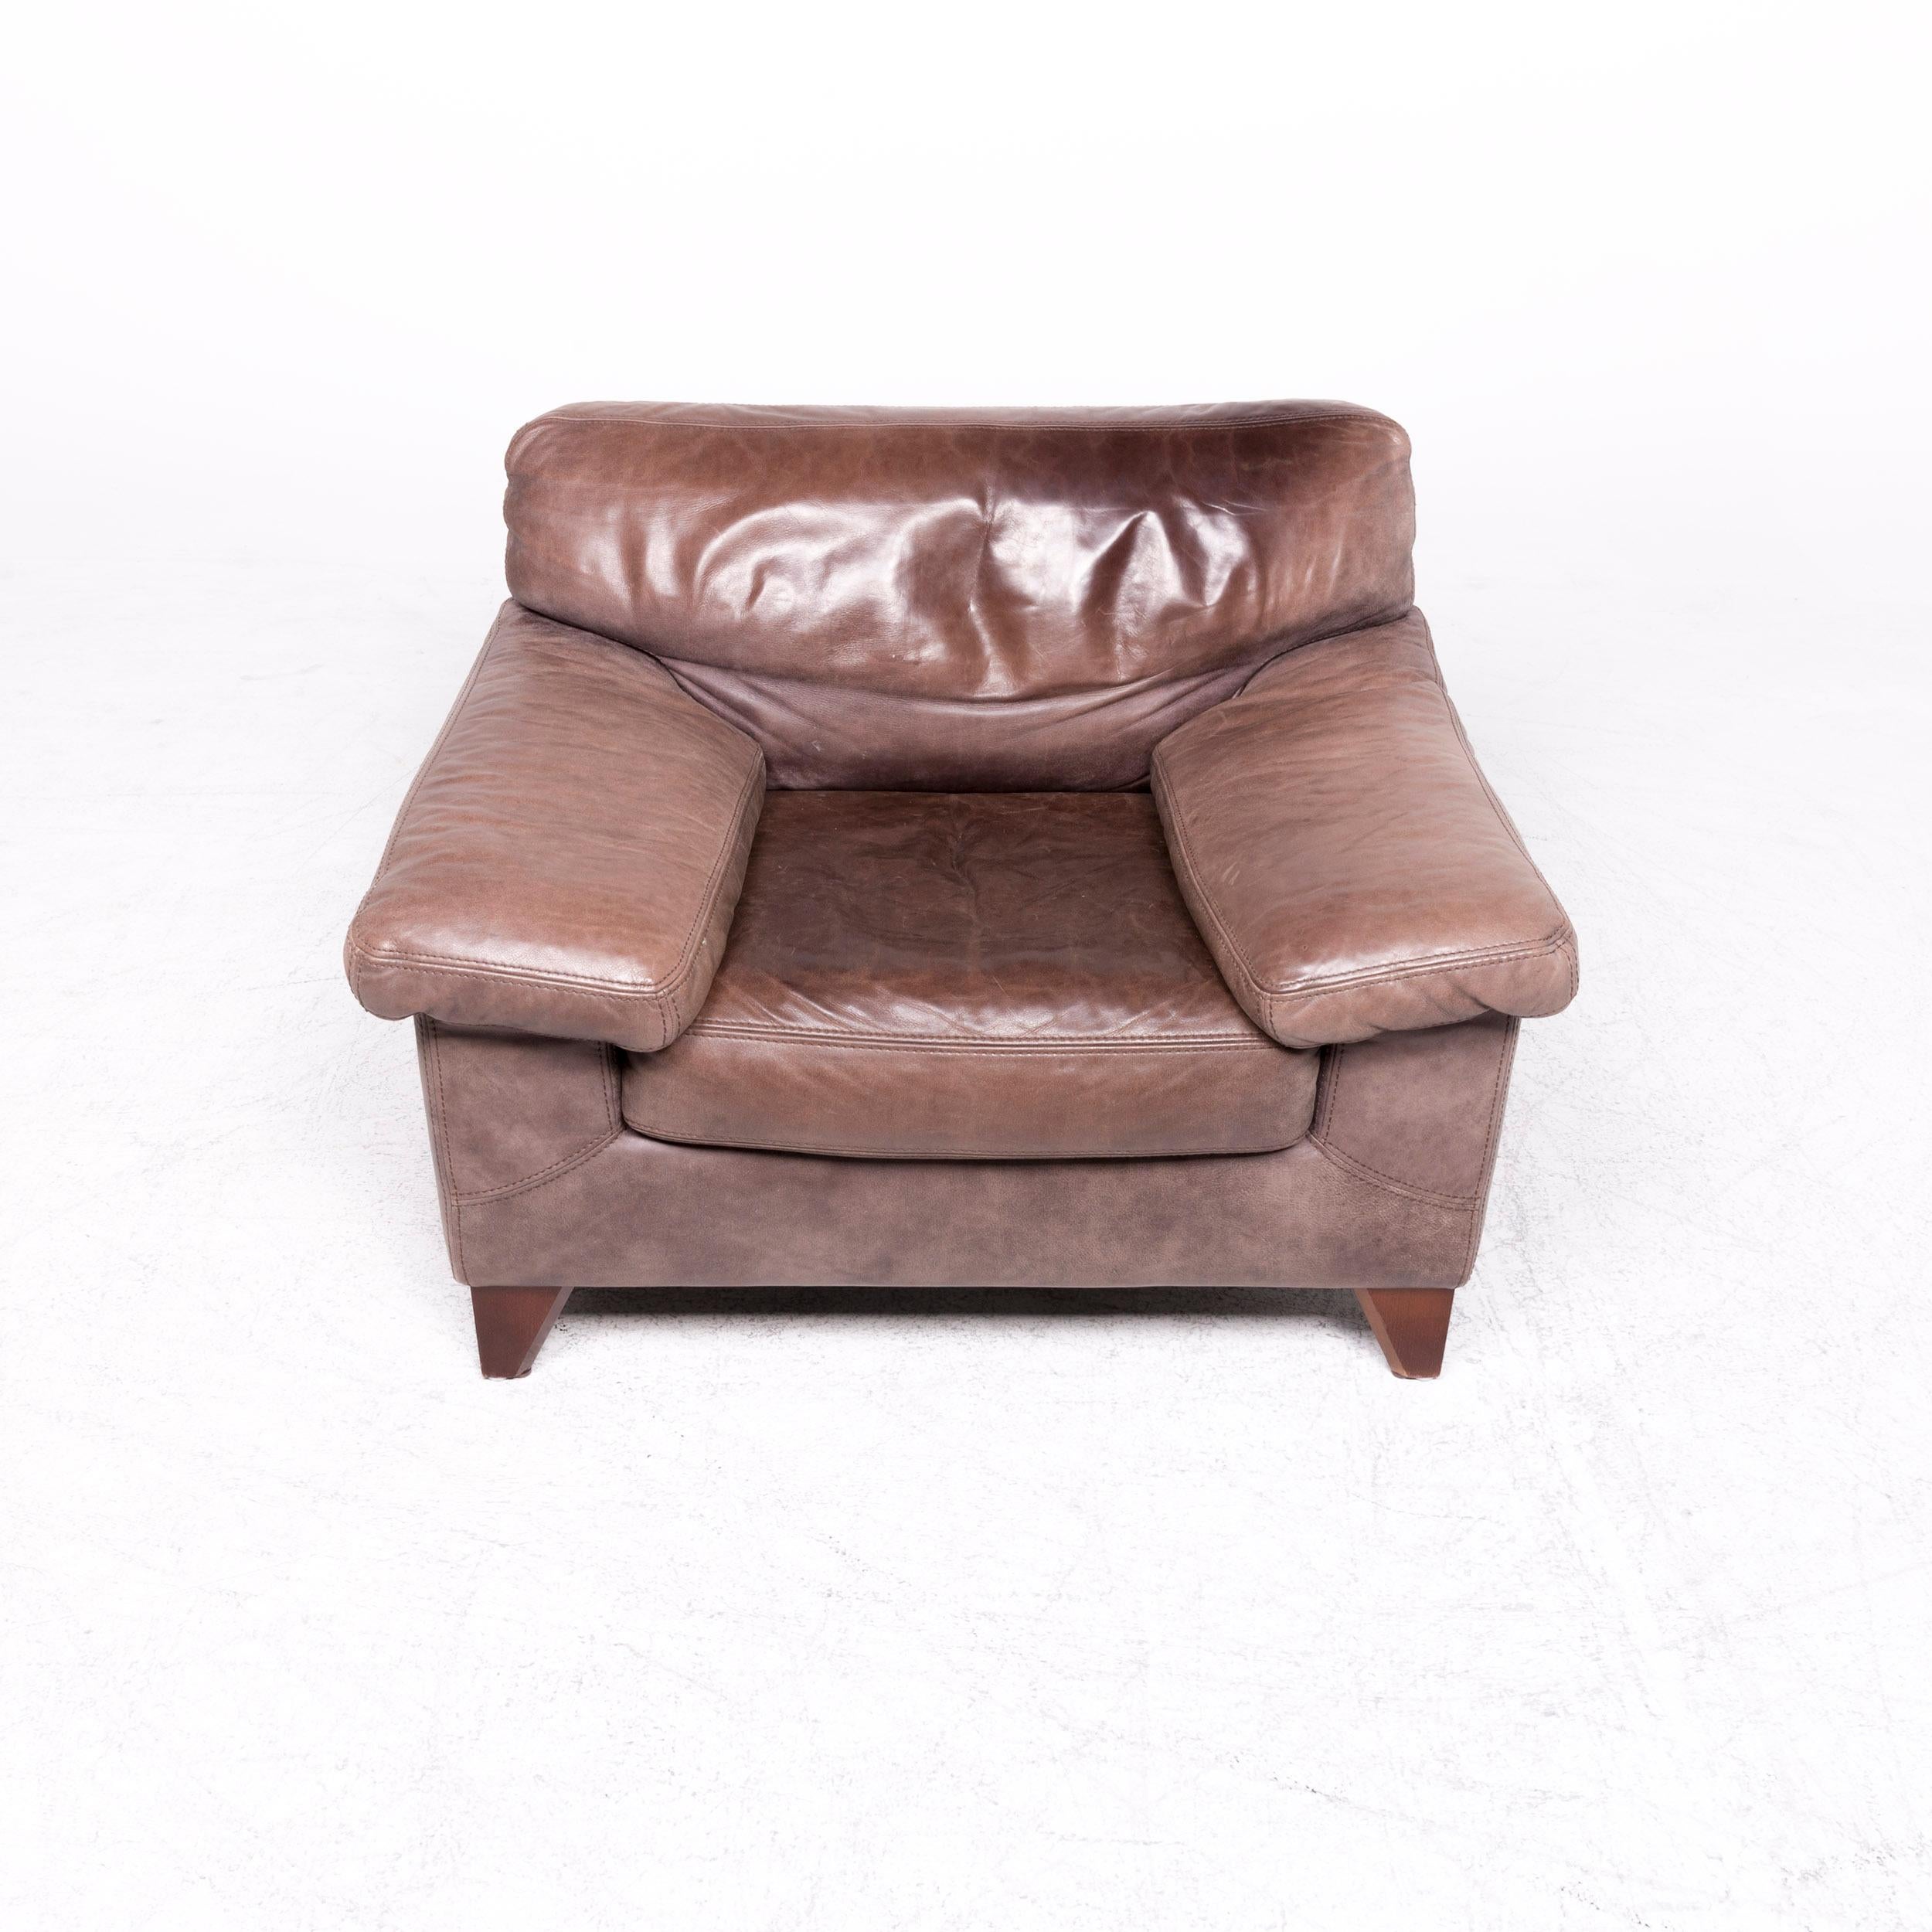 Contemporary Machalke Diego Designer Leather Armchair Brown by Teun Van Zanten Genuine For Sale